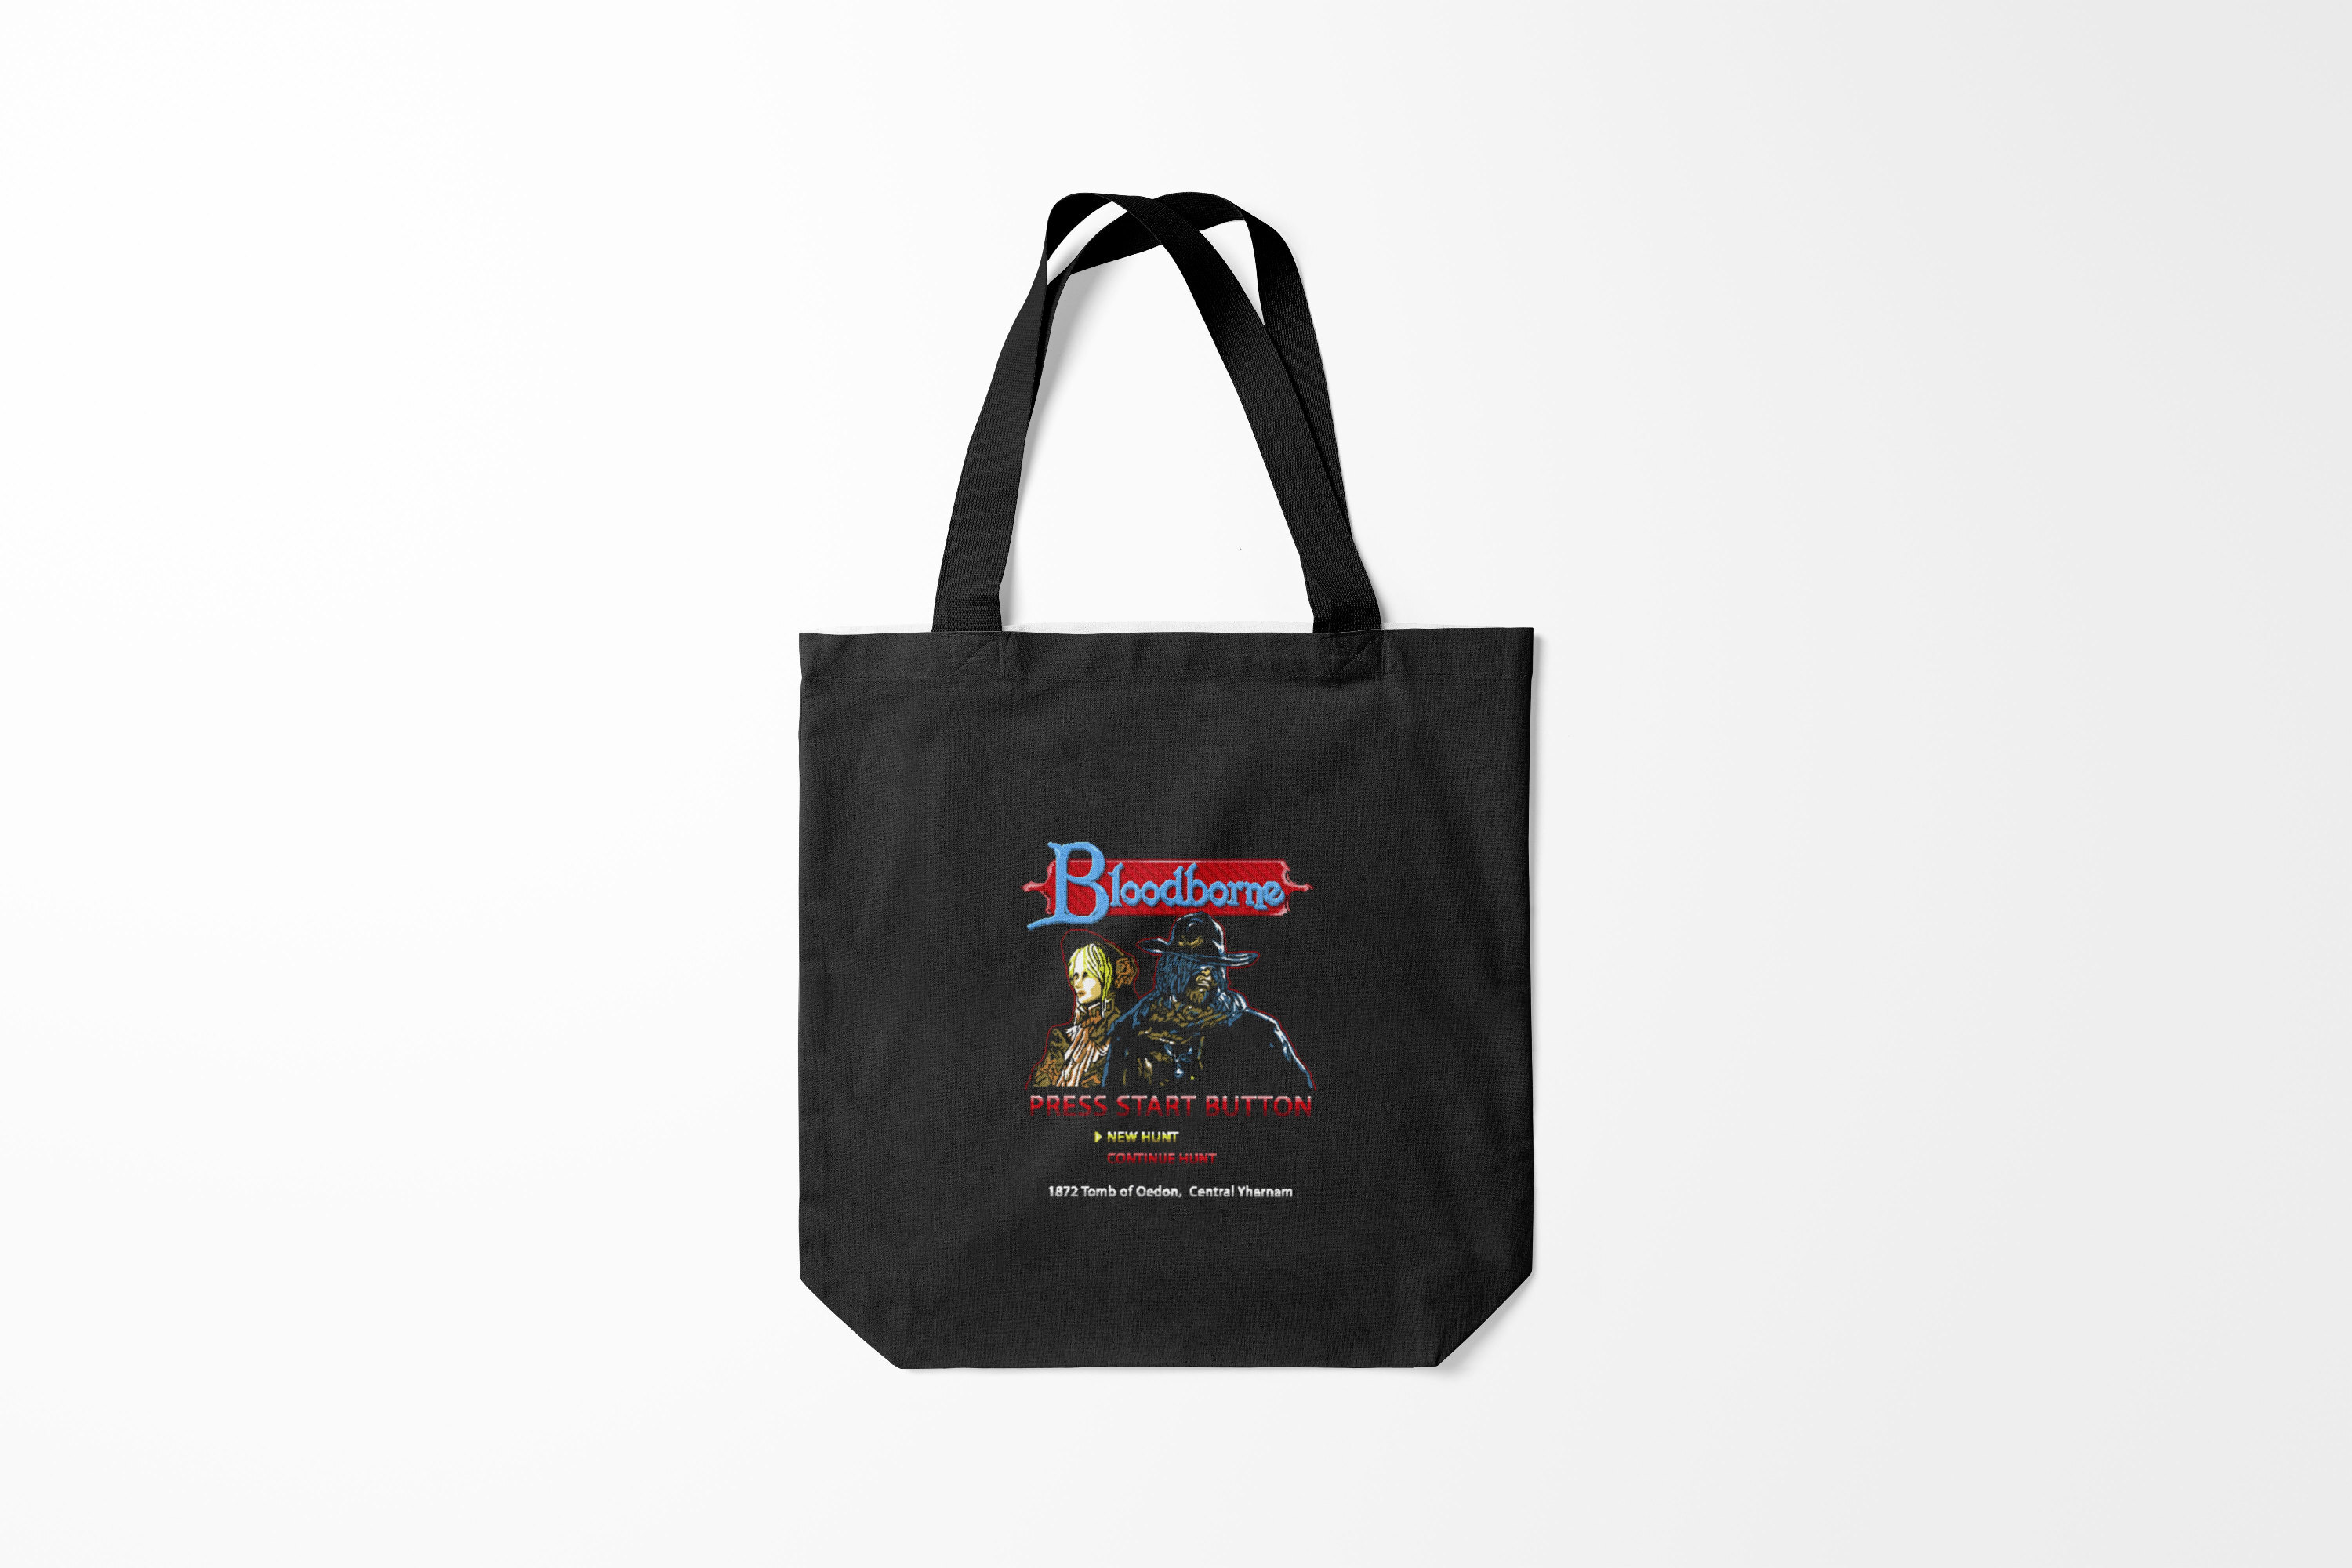 Унисекс-сумка шoппер Burnettie в стиле Bloodborne с 8-битным разноцветным узором.